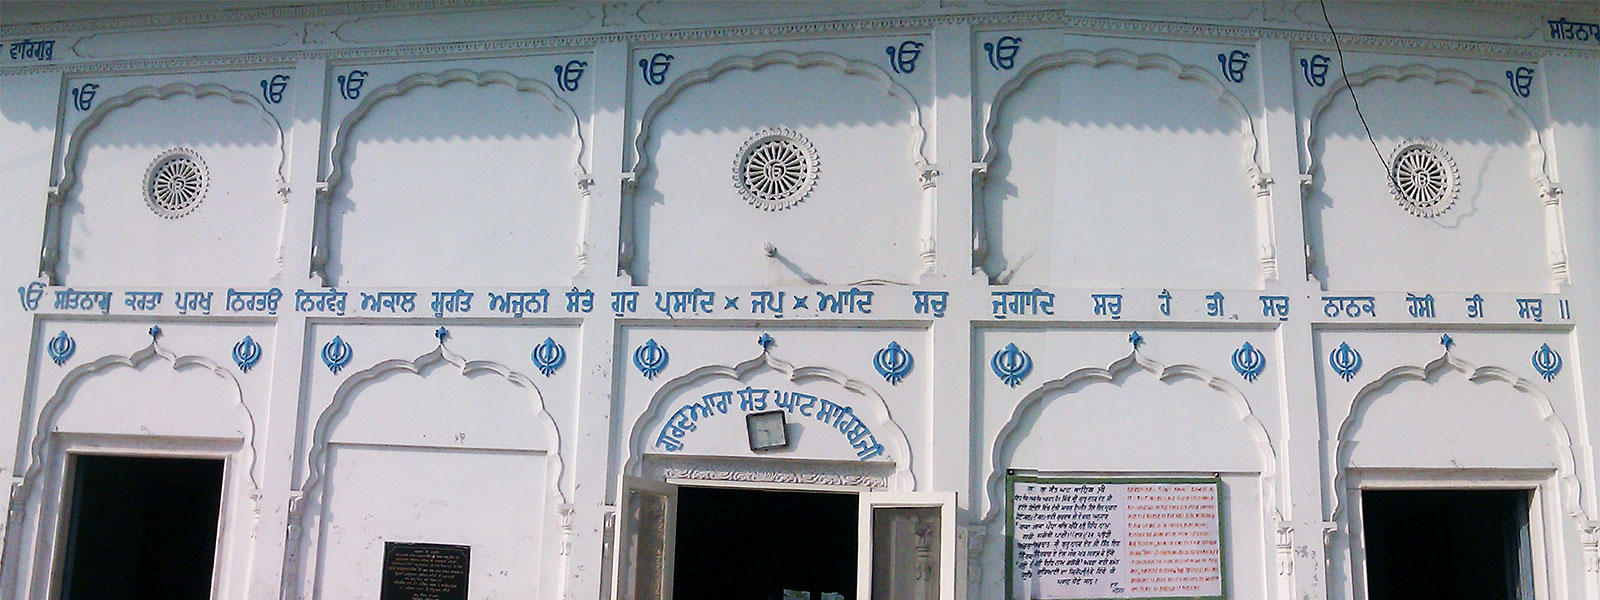 Mool Mantar at Gurudwara Sant Ghat